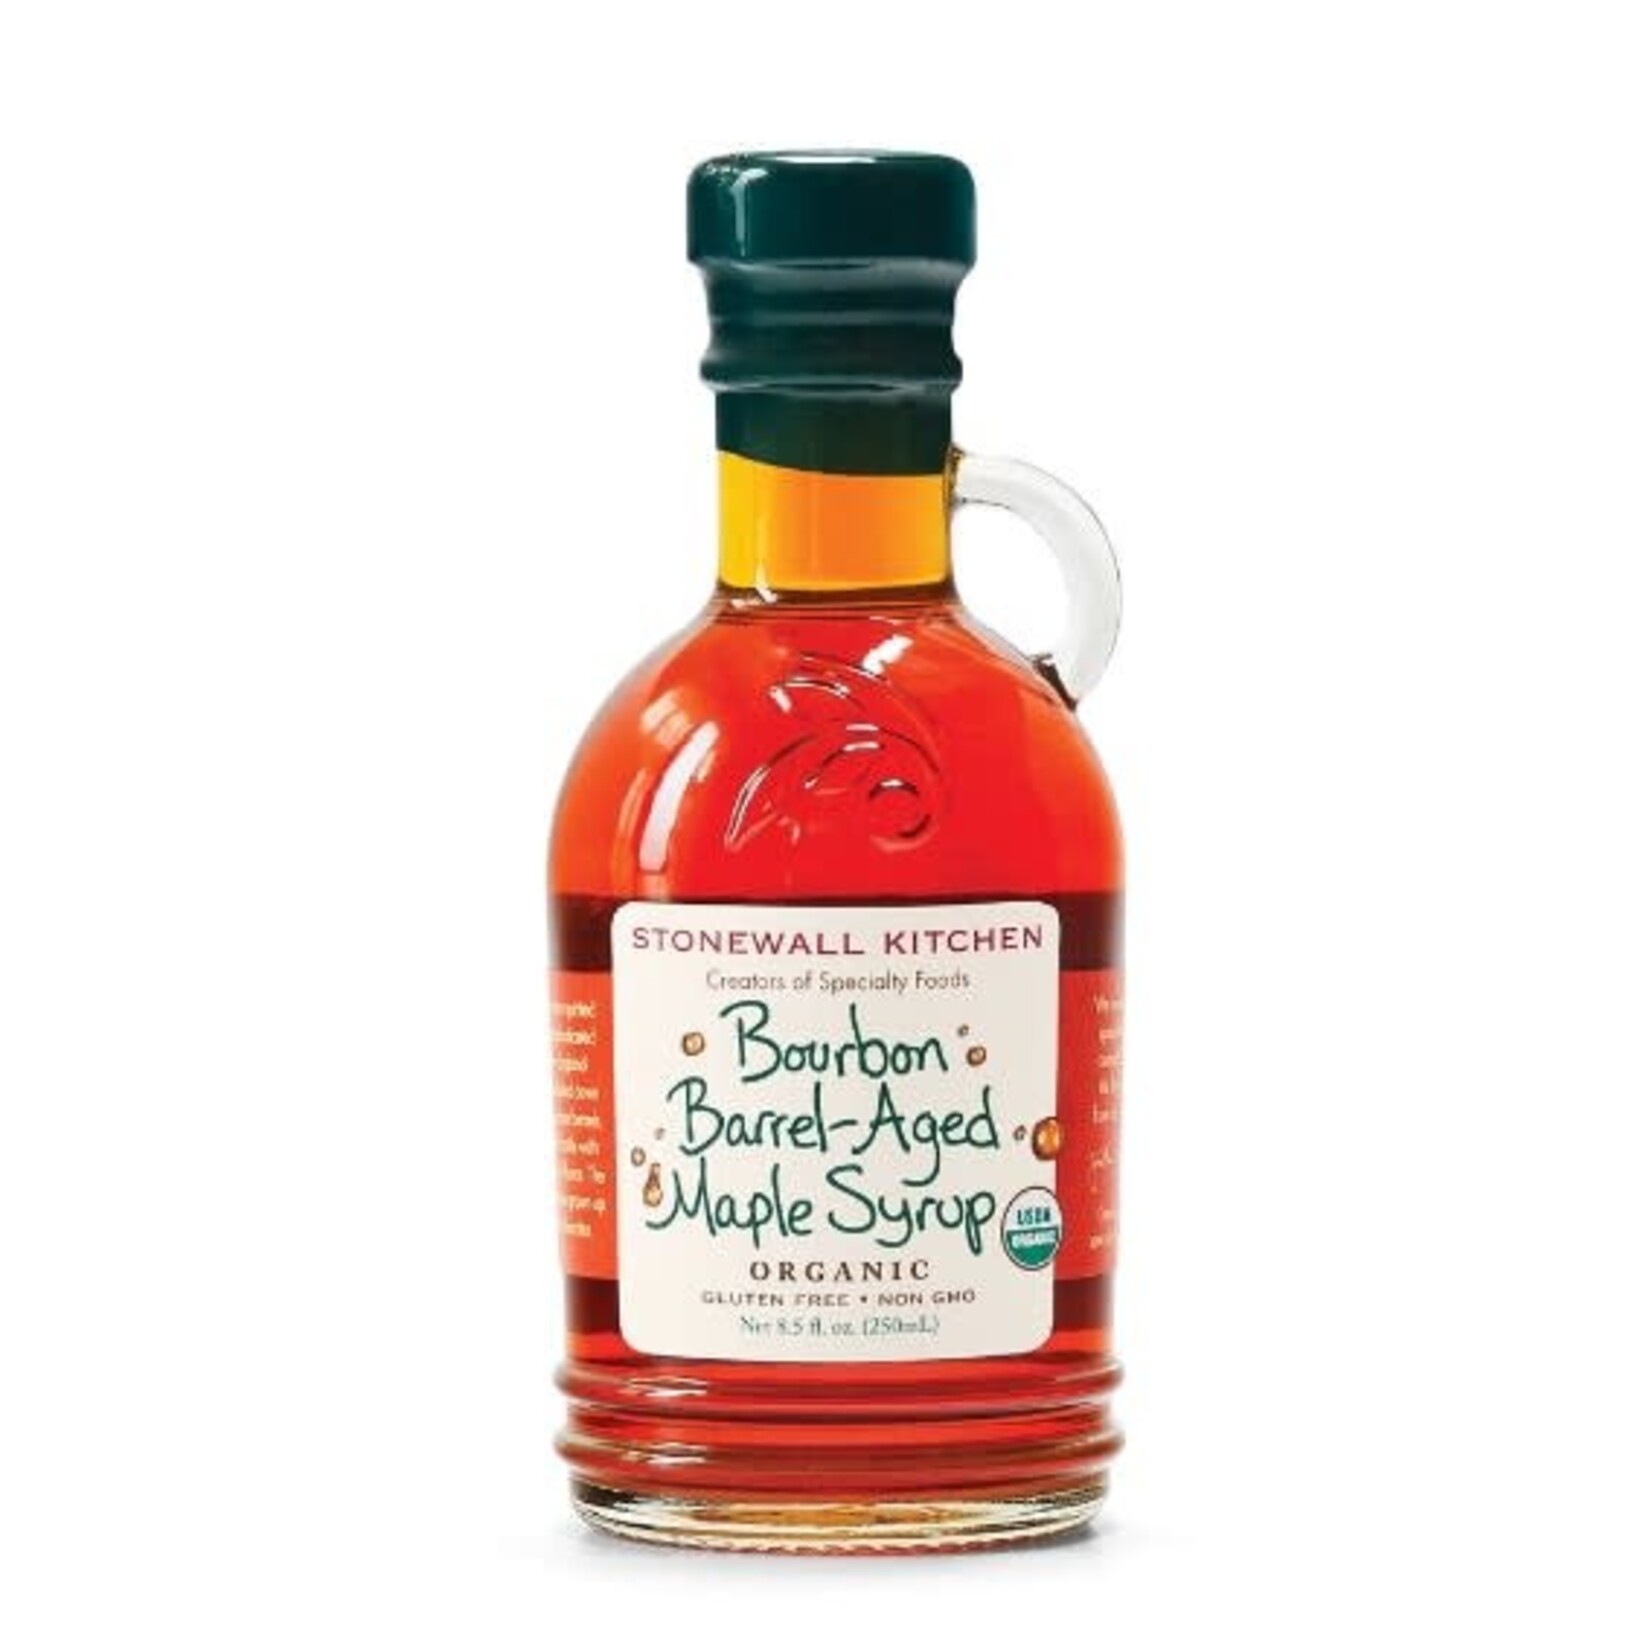 Stonewall Kitchen Stonewall Kitchen Organic Bourbon Barrel-Aged Maple Syrup